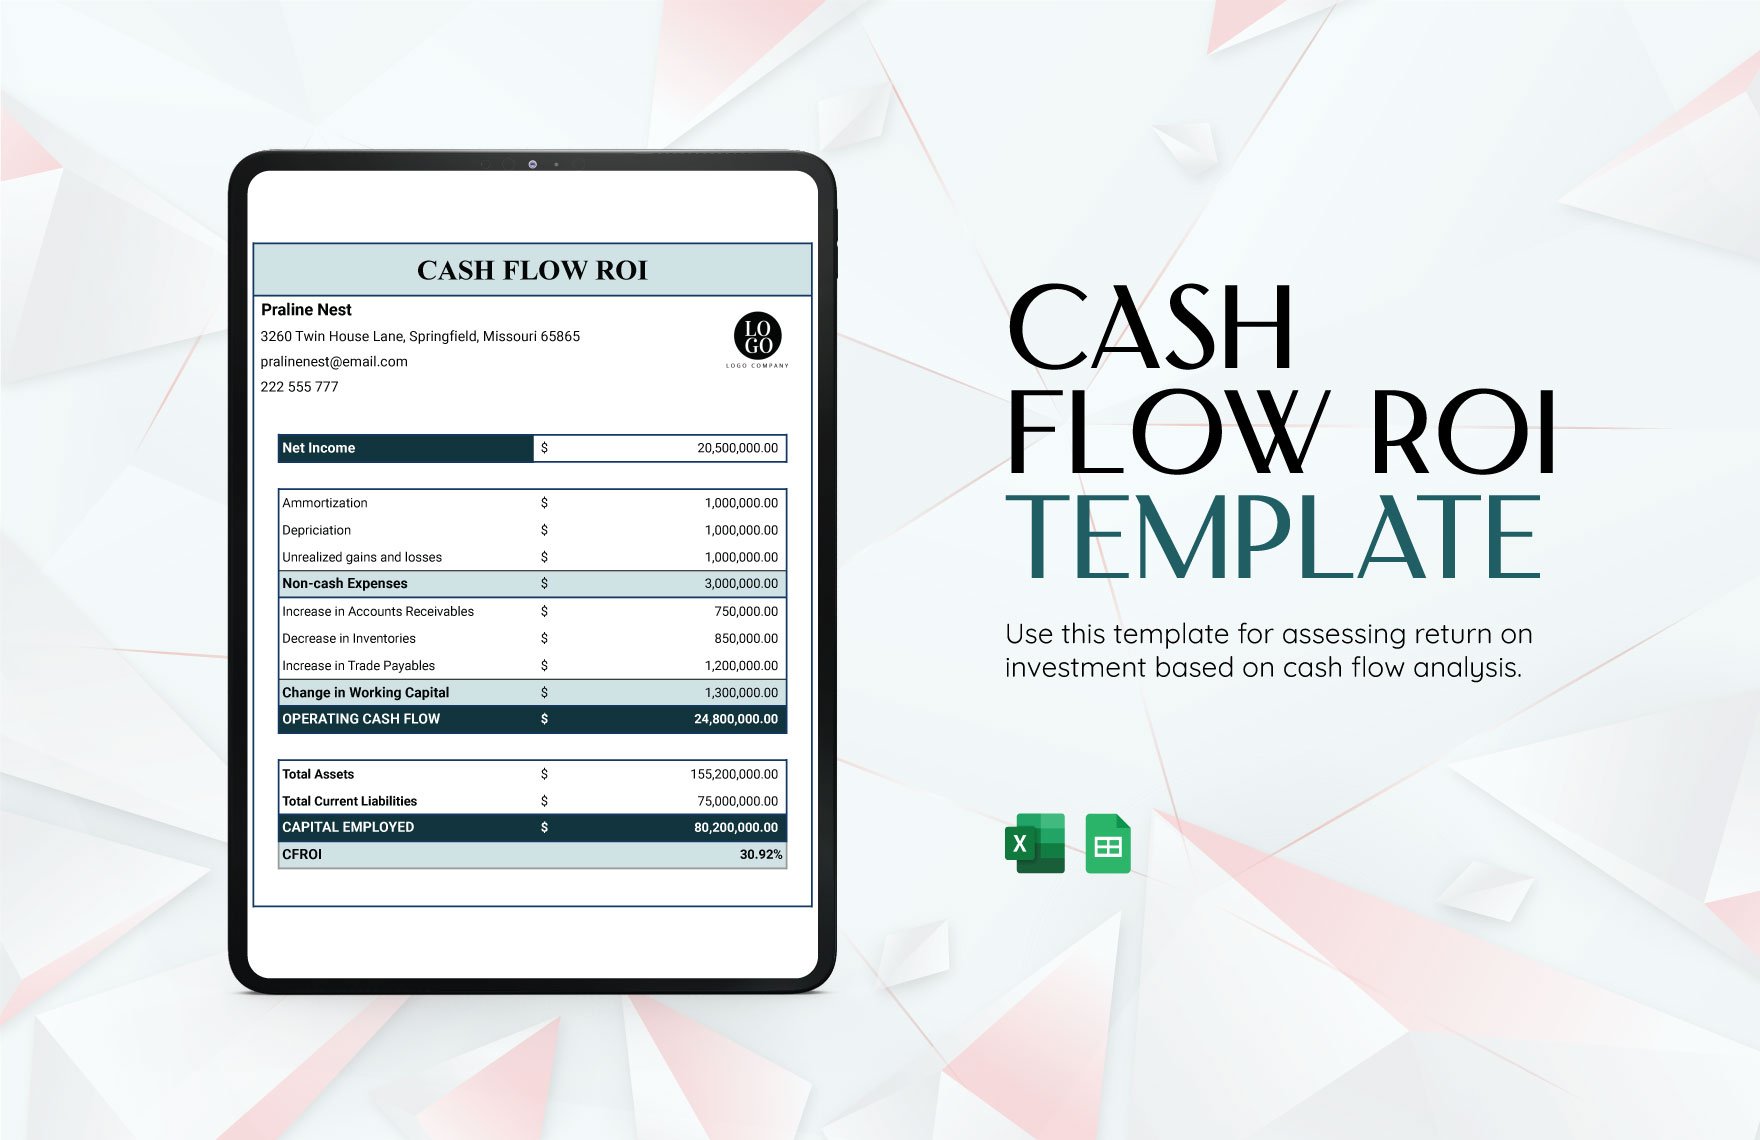 Cash Flow ROI Template